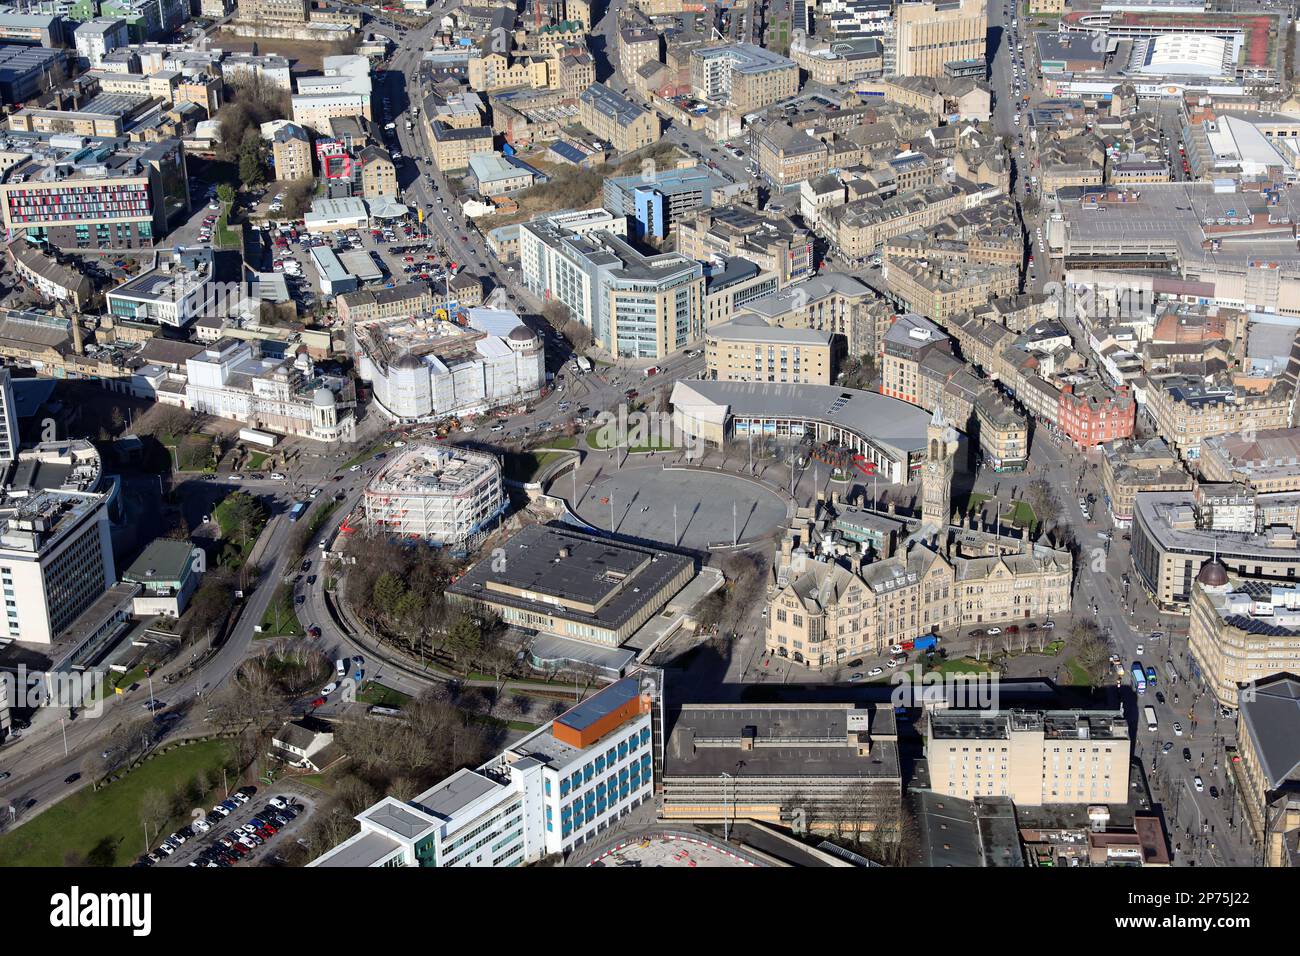 Luftaufnahme des Stadtzentrums von Bradford von Süden. Prominente Gebäude: Hundertjähriger Platz, Rathaus, Magistrates Court, Stadtbibliothek und Alhambra-Theater Stockfoto